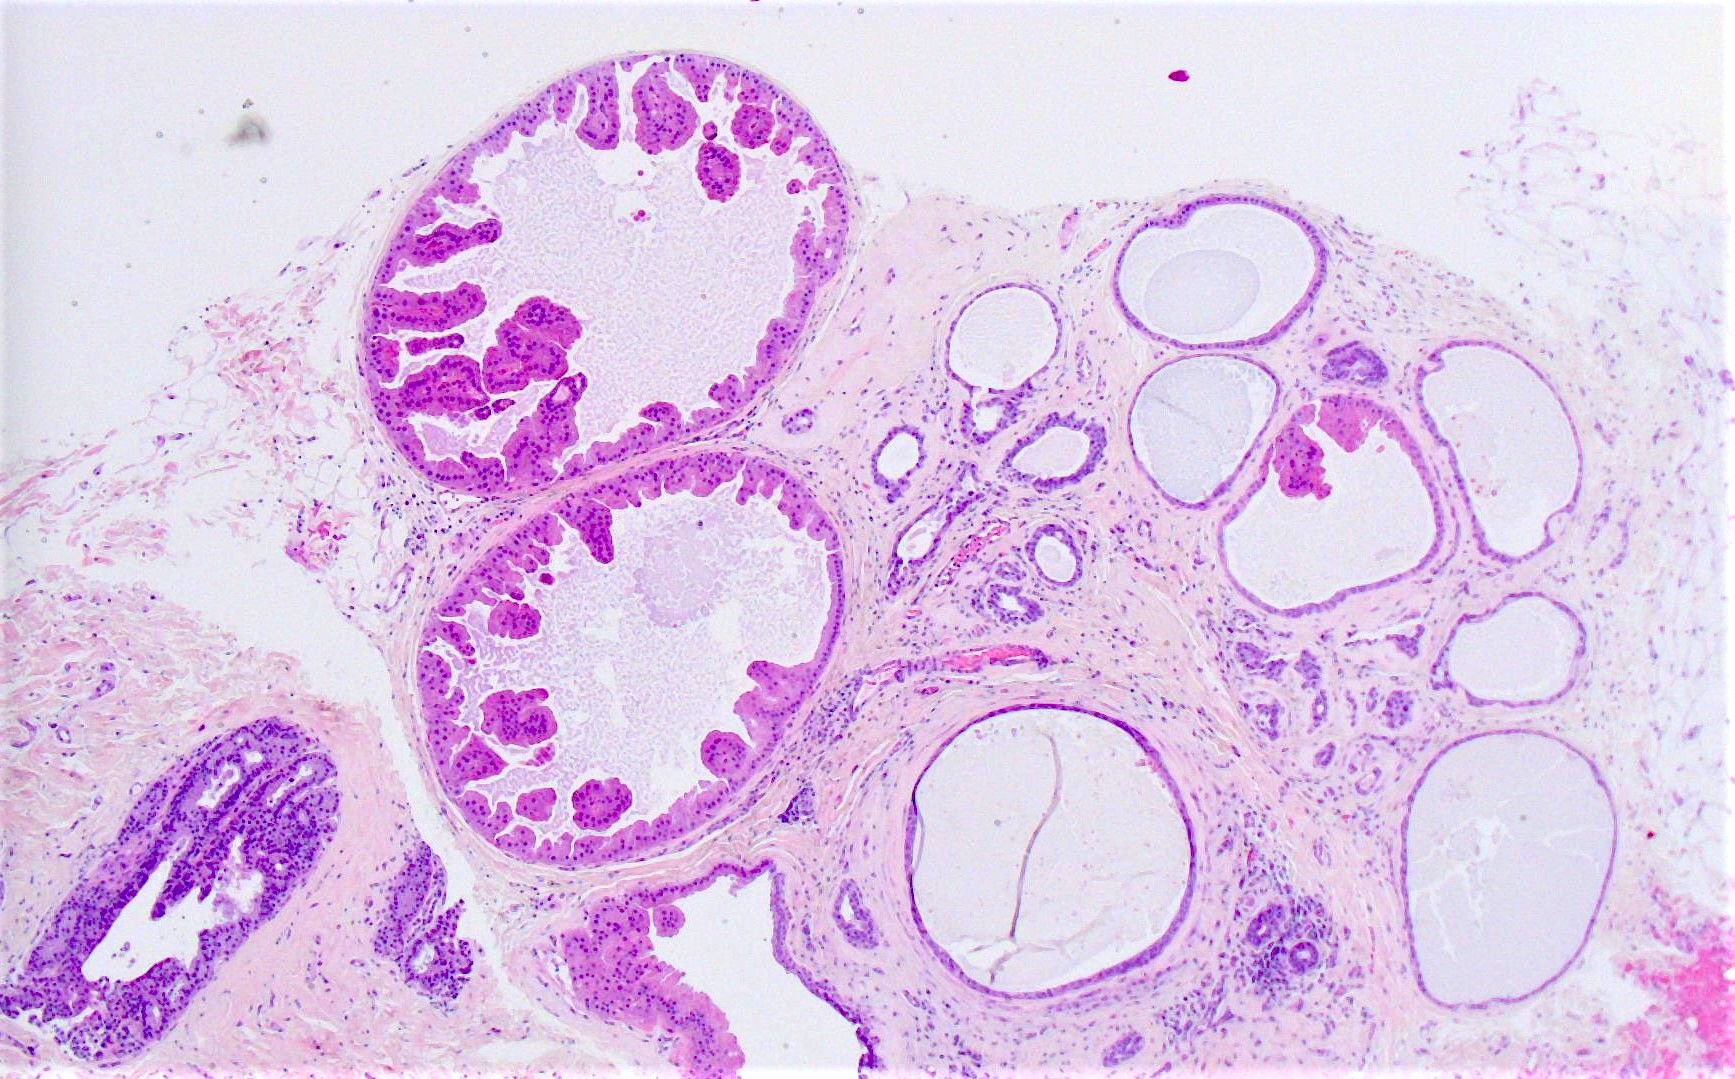 papilloma with apocrine metaplasia)